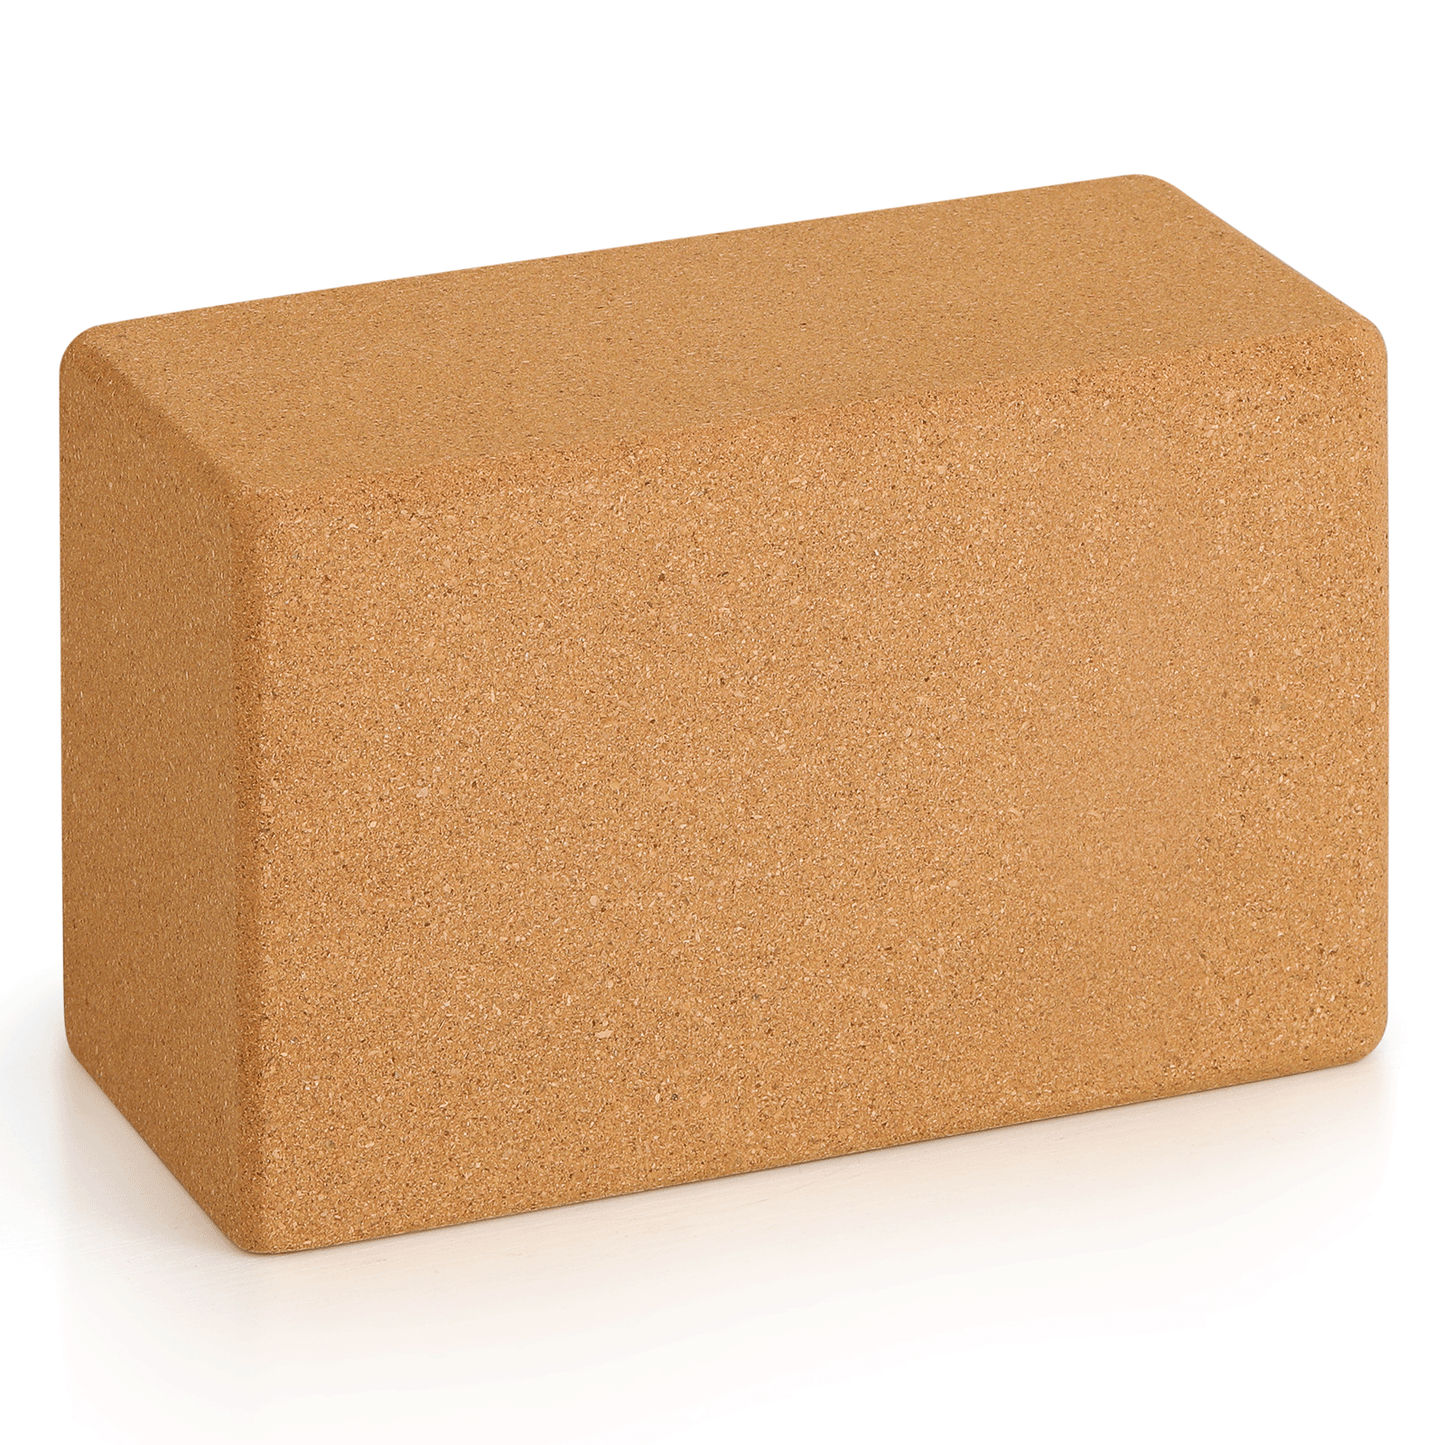 Cork Yoga Block - 9x6x4 Inch